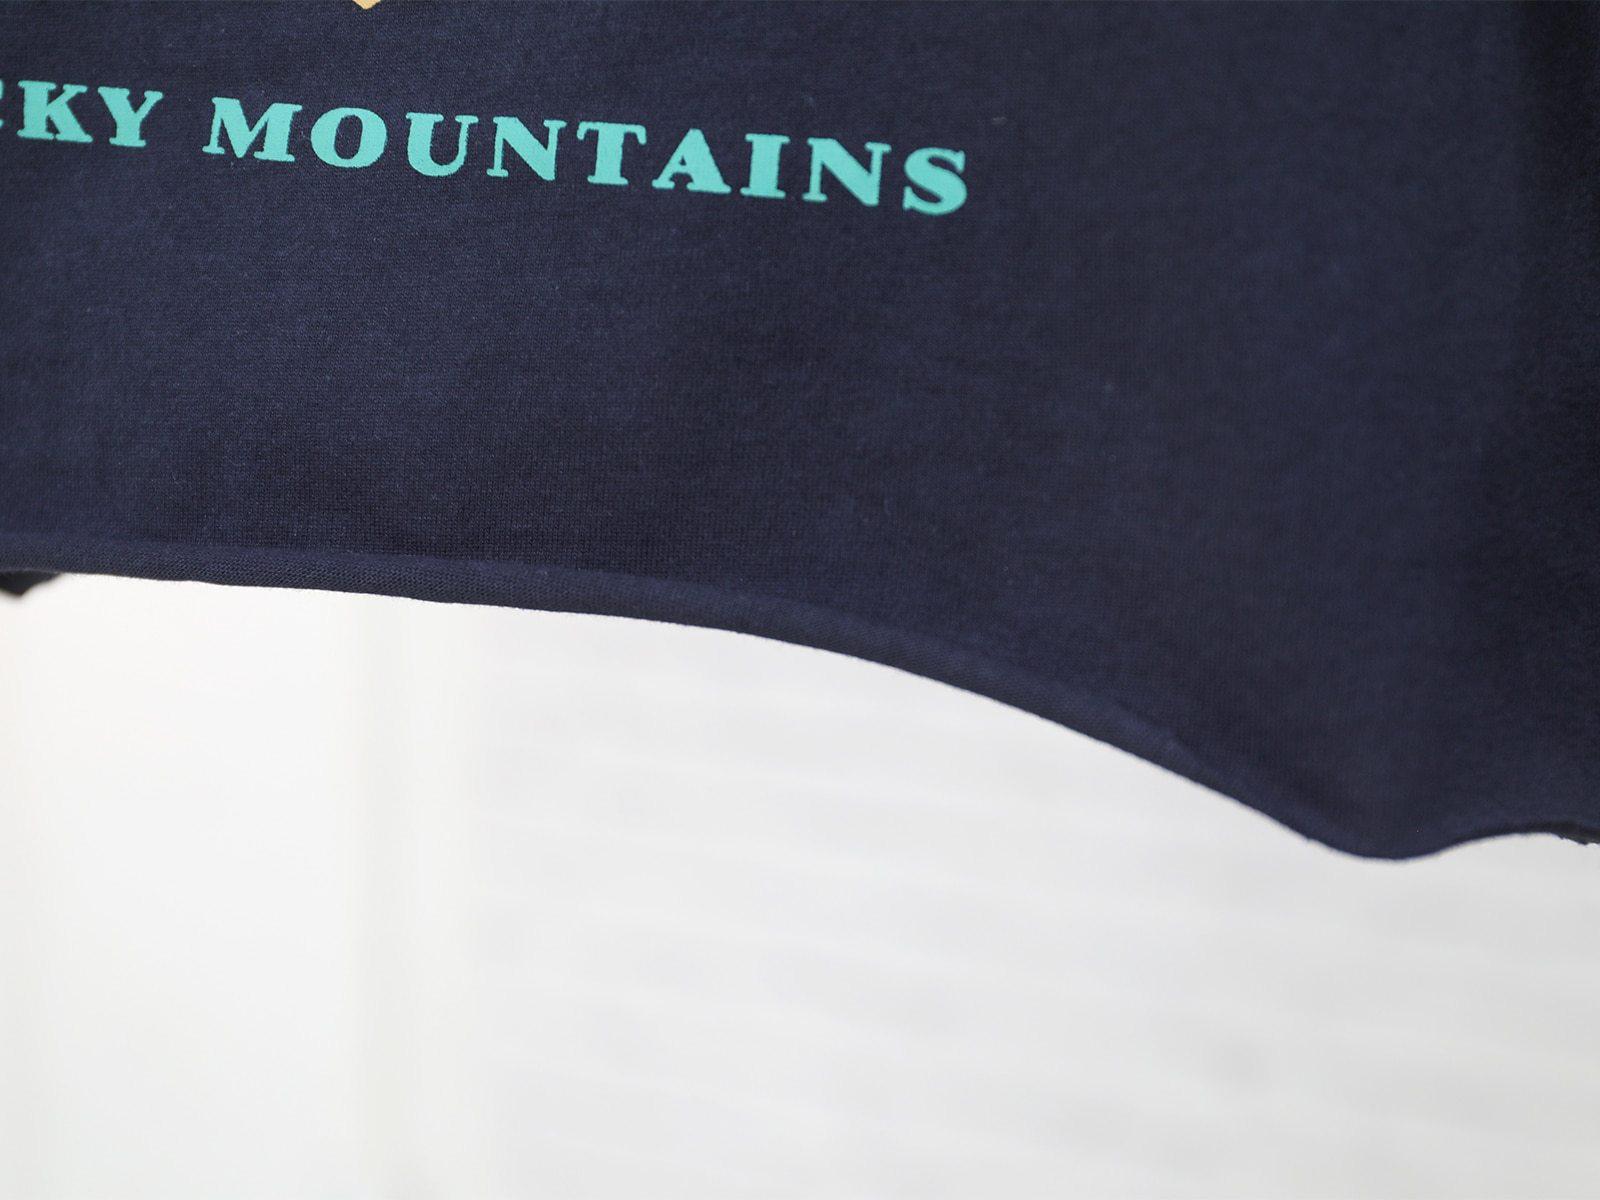 Wyoming Shirt - Aesthetic Clothing